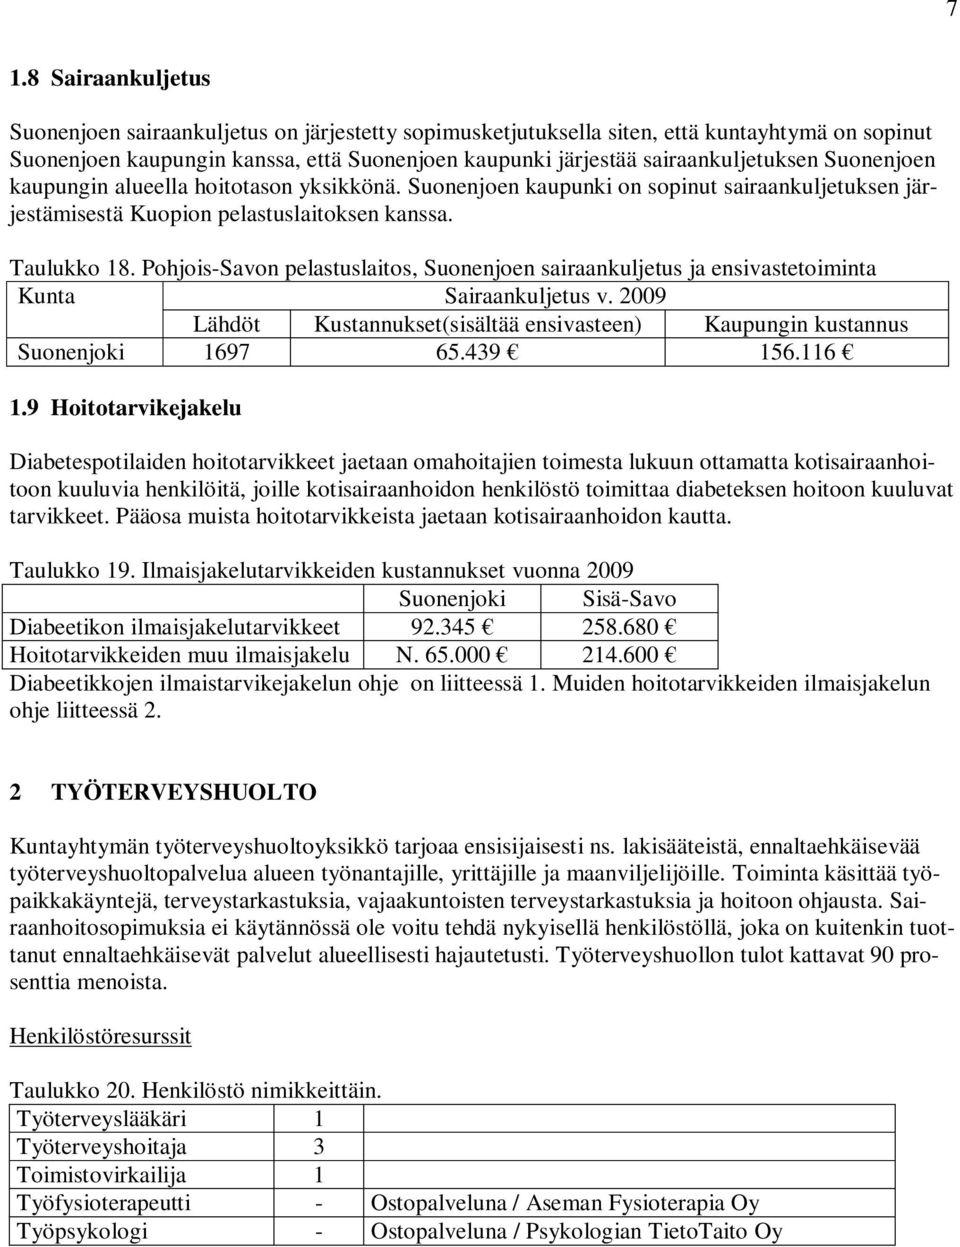 Pohjois-Savon pelastuslaitos, Suonenjoen sairaankuljetus ja ensivastetoiminta Kunta Sairaankuljetus v. 2009 Lähdöt Kustannukset(sisältää ensivasteen) Kaupungin kustannus Suonenjoki 1697 65.439 156.